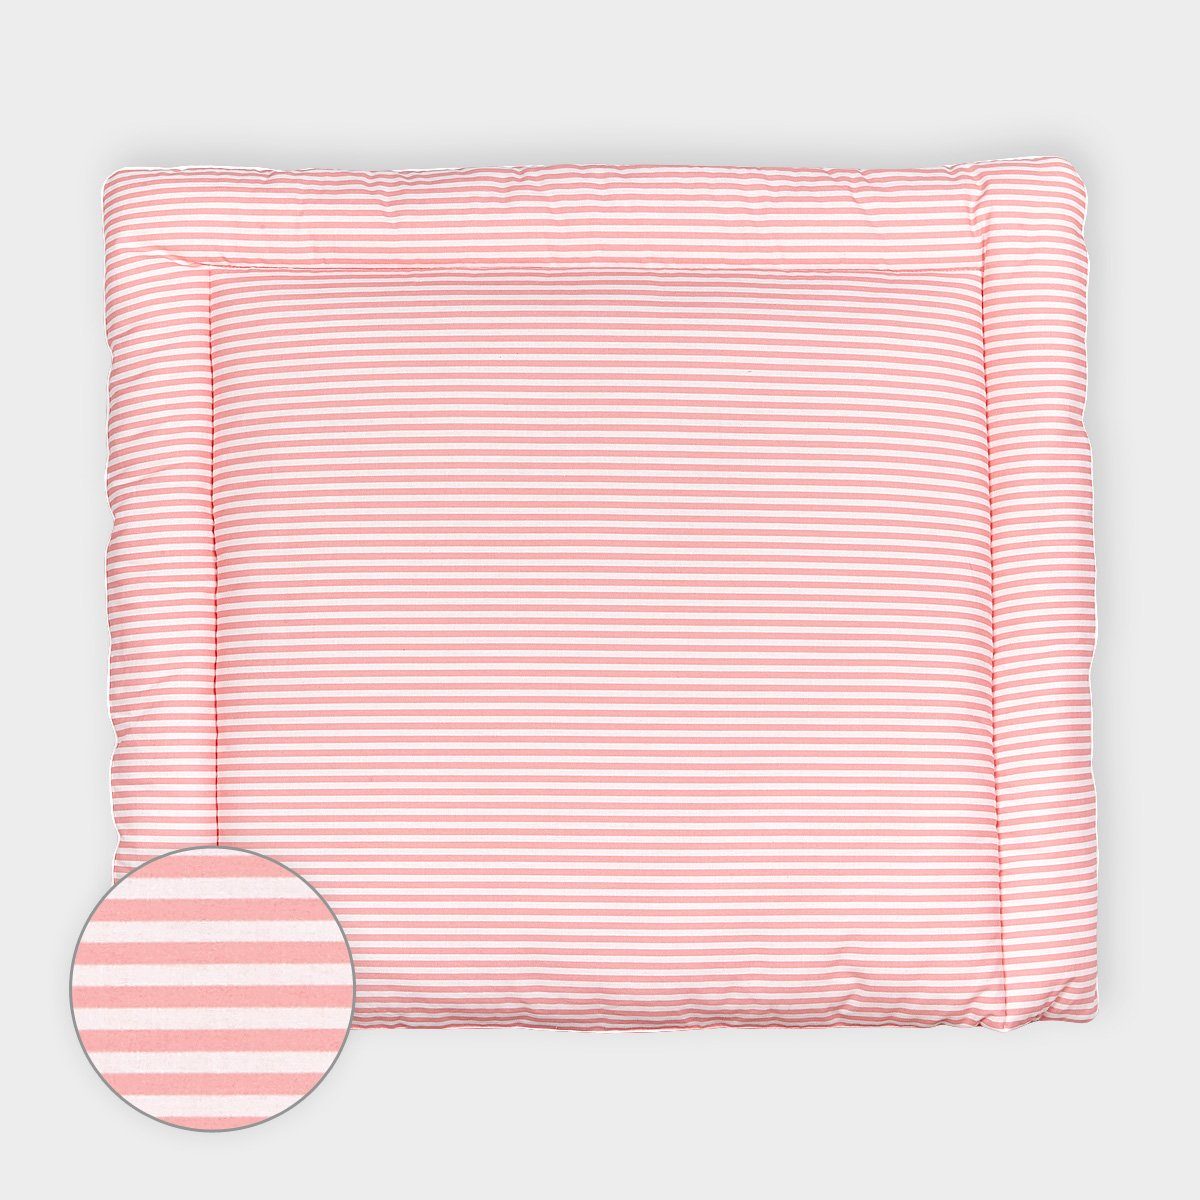 KraftKids Wickelauflage Streifen rosa, extra Weich (500 g/qm), mit antiallergenem Vlies gefüllt